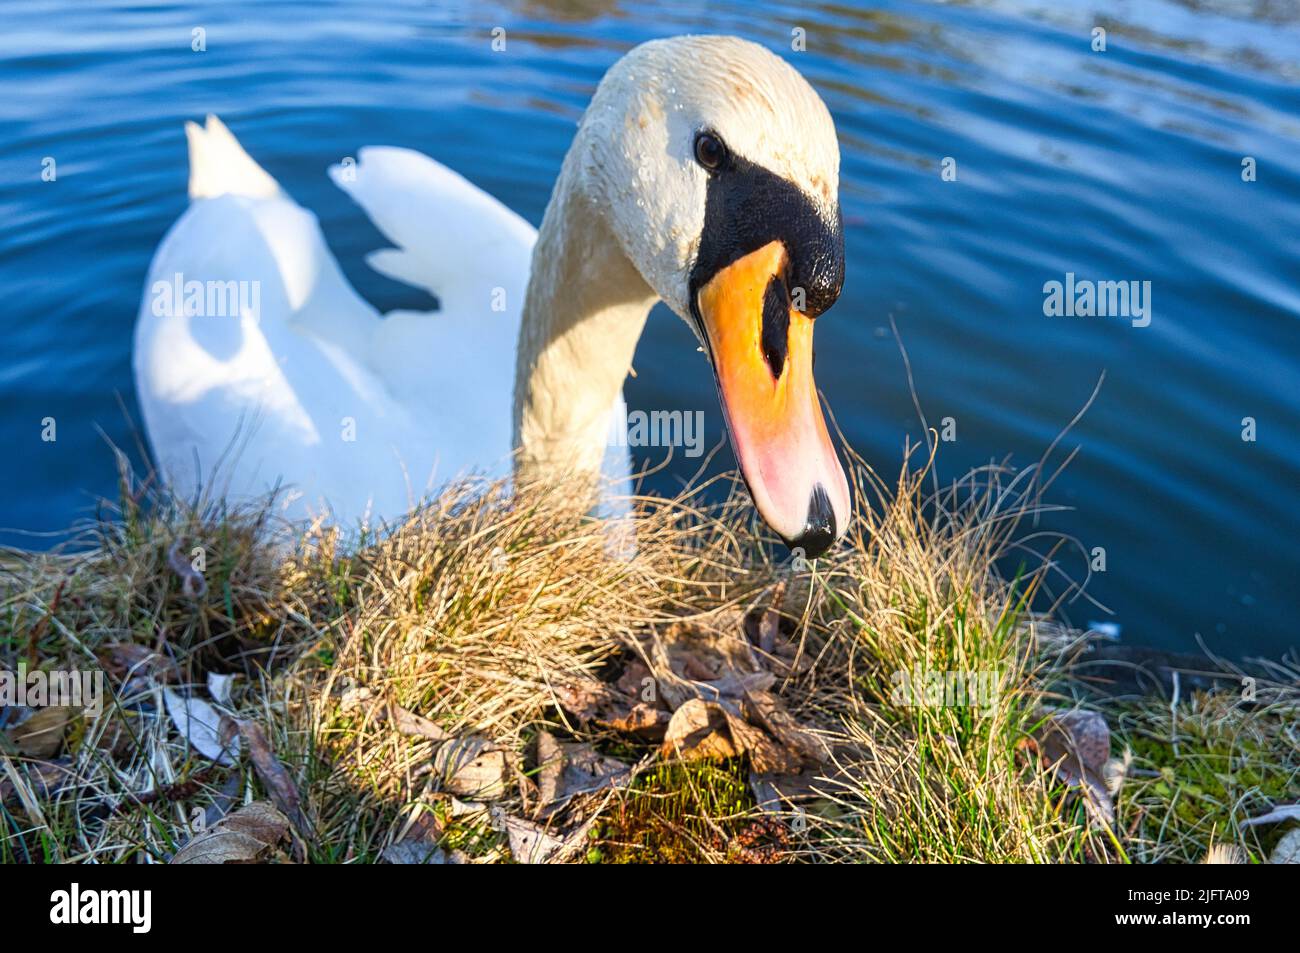 Stummer Schwan am Ufer. Interessierter Blick des Wasservogels. Vogel aus Brandenburg. Tierfoto aus der Natur Stockfoto